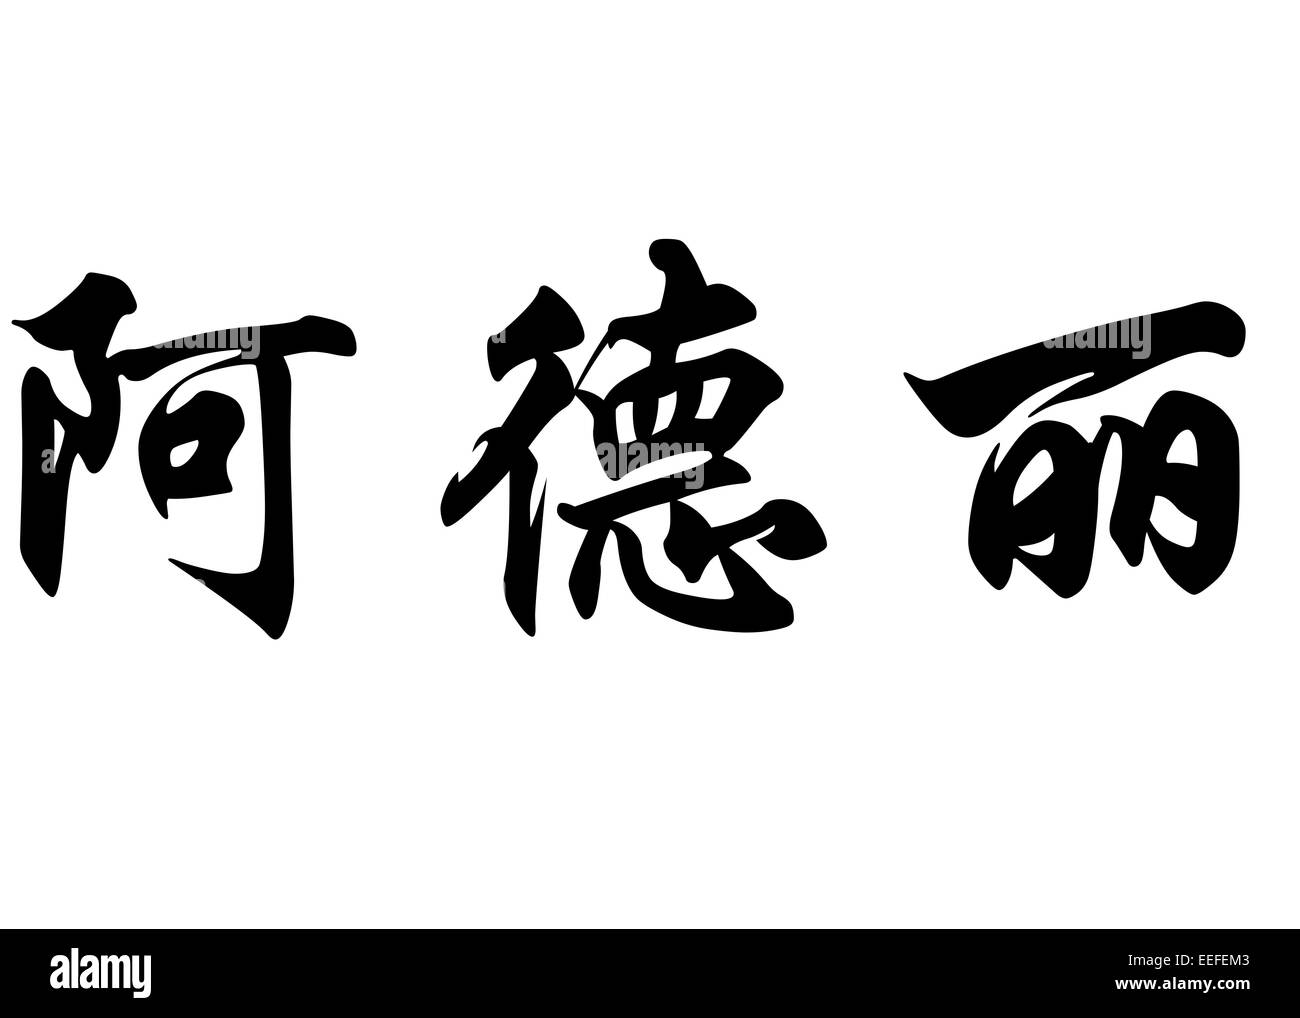 Nom anglais de la Terre Adélie en chinois Calligraphie kanji ou caractères caractères japonais Banque D'Images